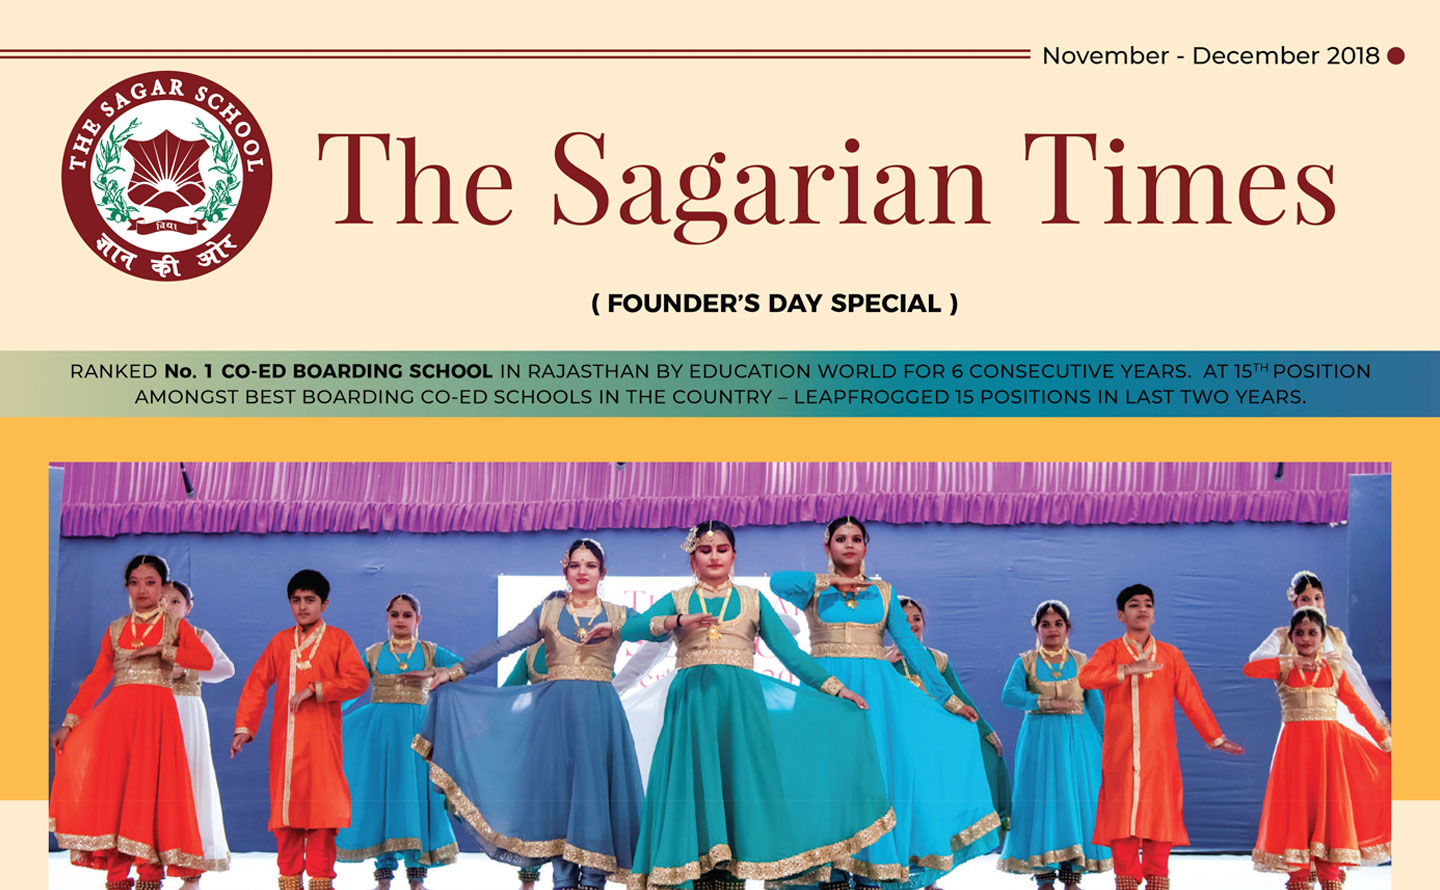 The Sagarian Times November - December 2018